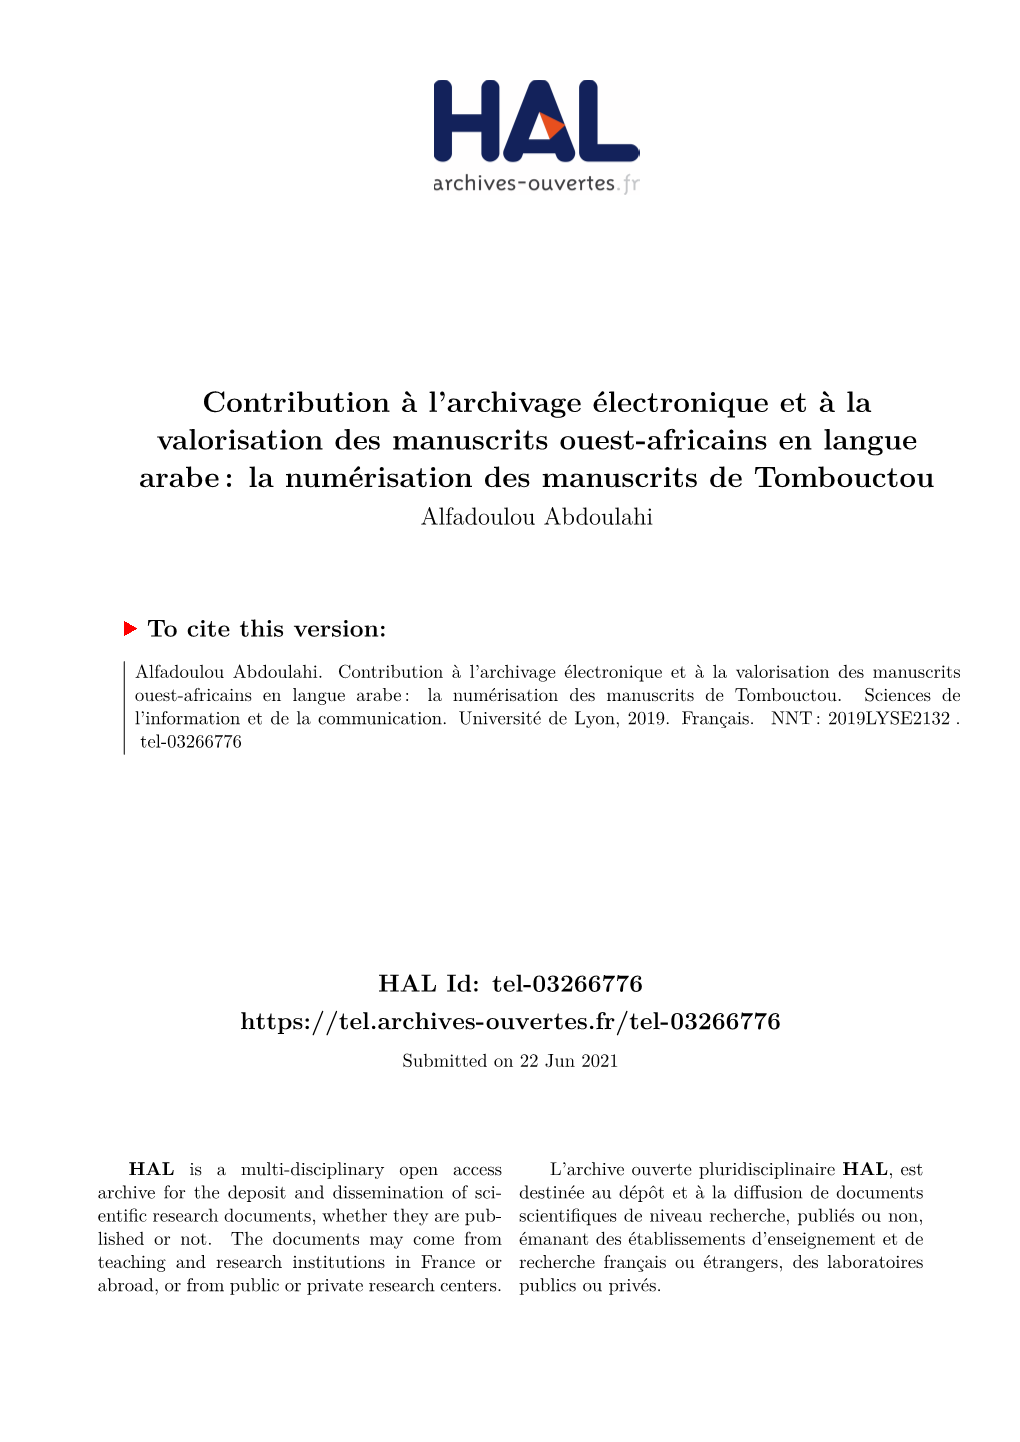 La Numérisation Des Manuscrits De Tombouctou Alfadoulou Abdoulahi